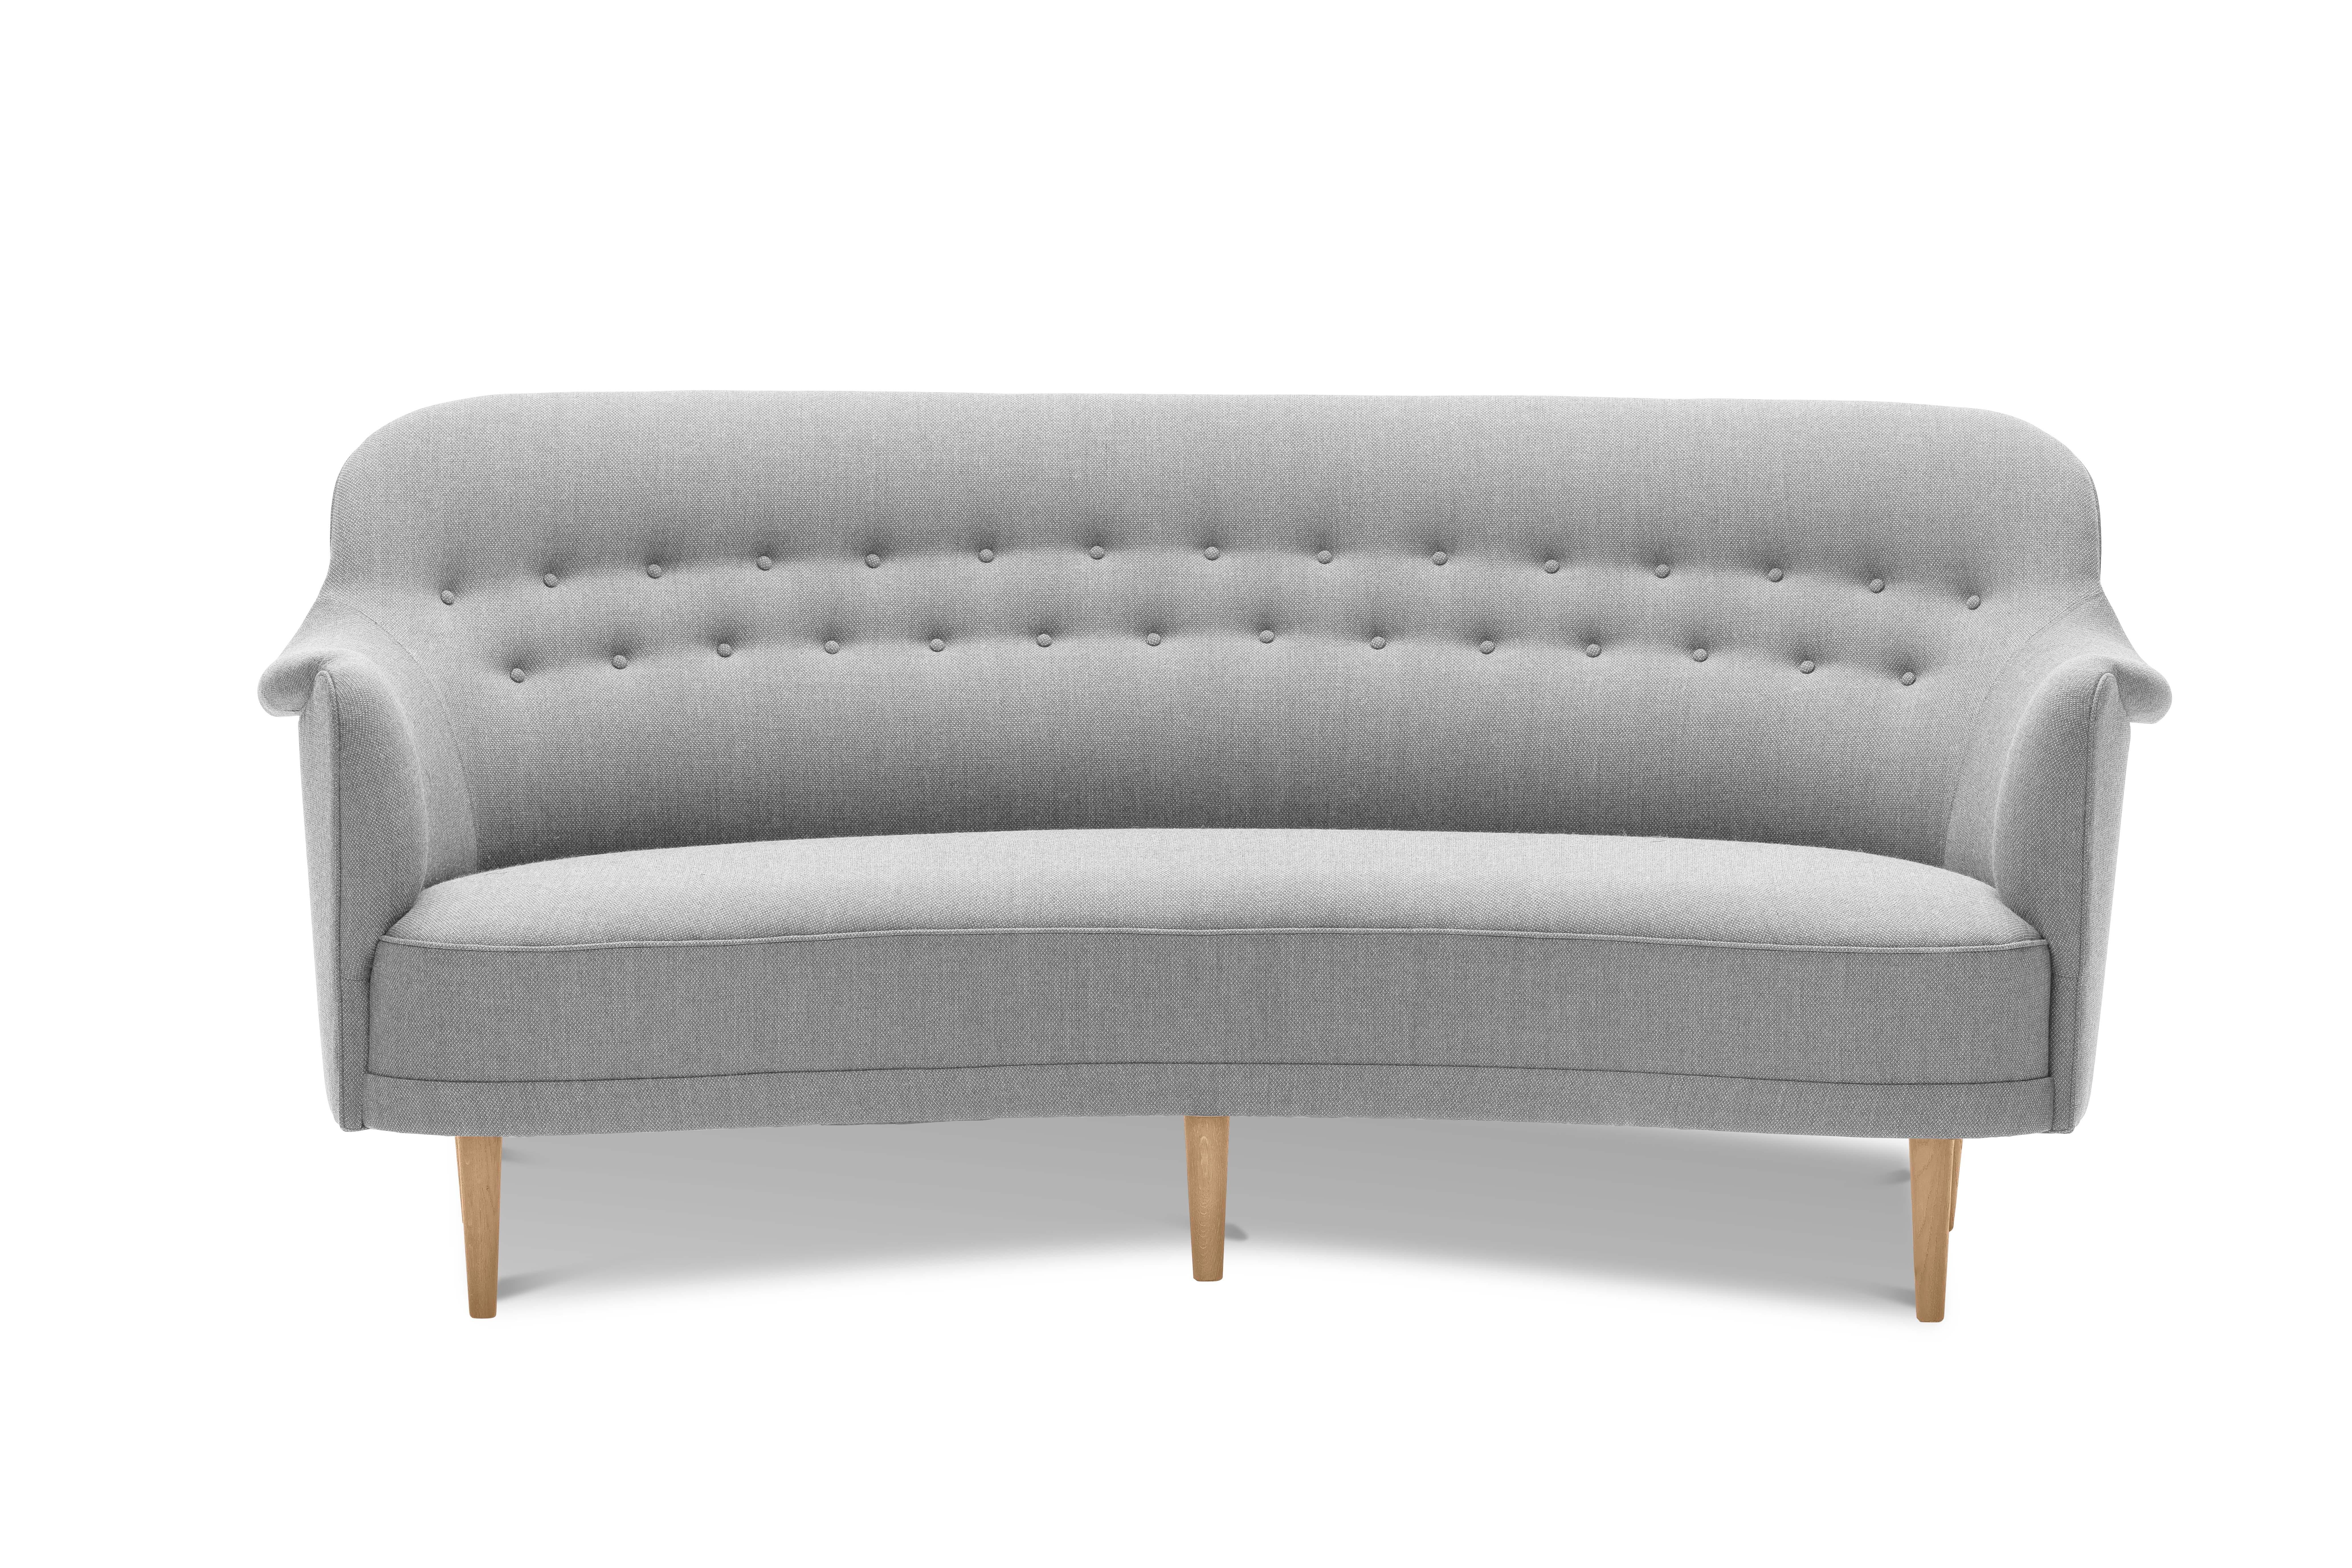 Samsas a été conçu en 1960 et est considéré comme l'élément le plus typique des meubles rembourrés de Carl Malmsten. Le modèle Samsas est une évolution du modèle original de fauteuil Konsert, que Carl Malmsten a conçu pour la salle de concert de